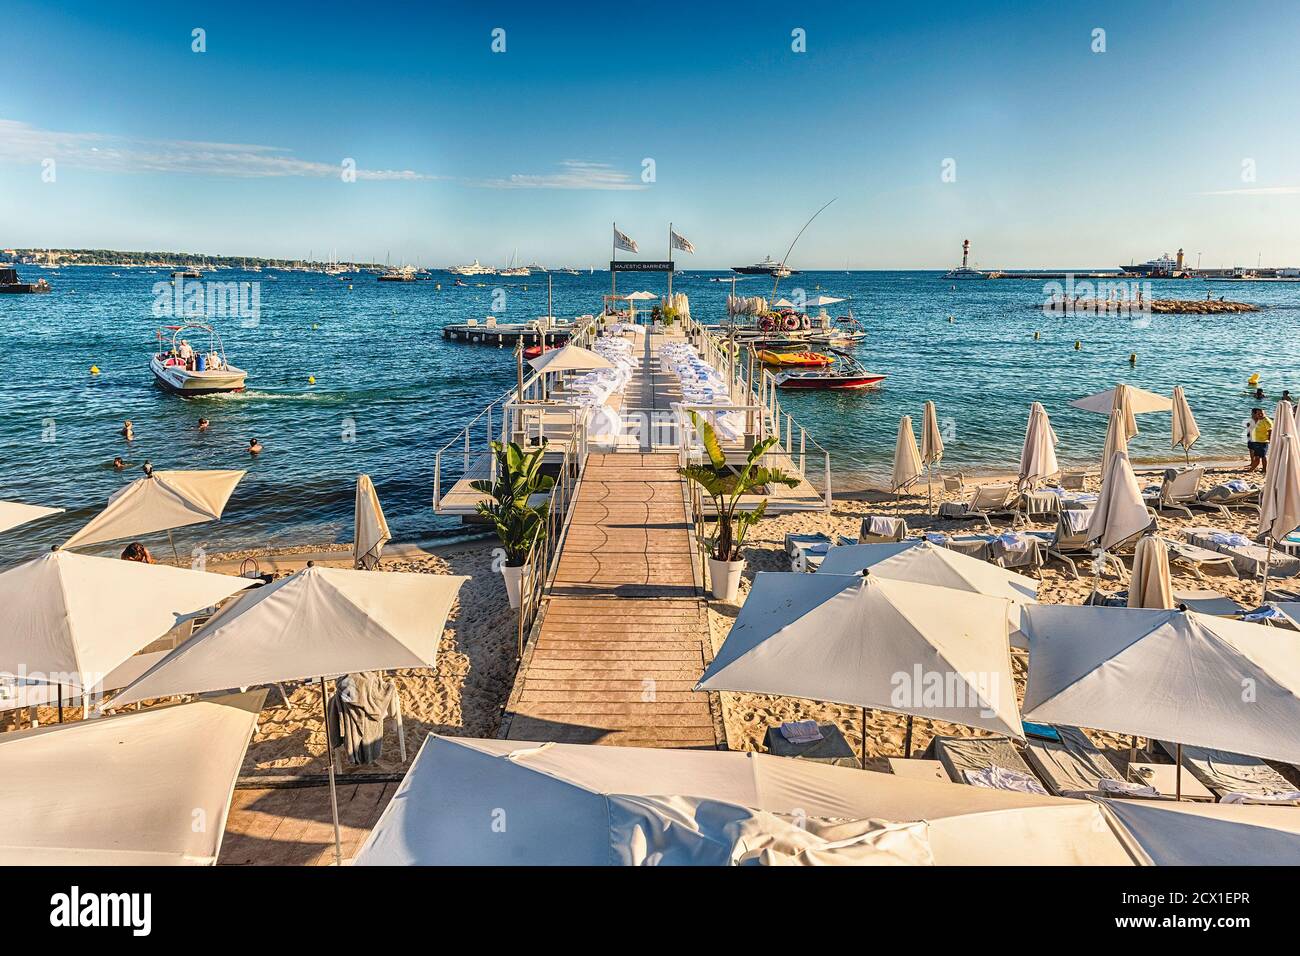 CANNES, FRANCIA - AGOSTO 15: Messa a punto dei tavoli e delle sbarre sulla spiaggia del Majestic Barrière hotel a Cannes, Costa Azzurra, Francia, come visto su A. Foto Stock